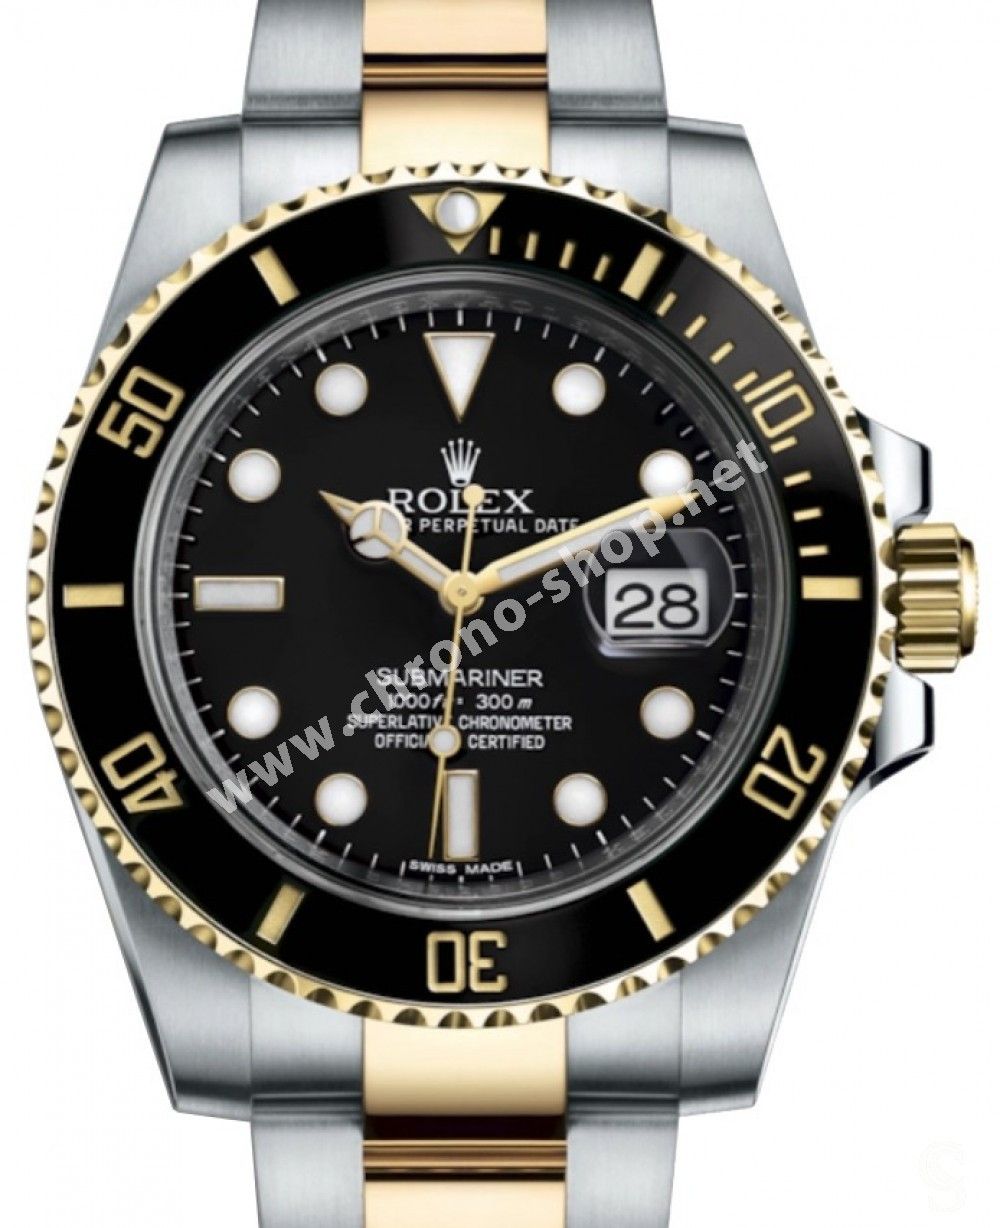 Rolex Genuine Submariner Date Ceramic Watch Black Grey insert watch ...